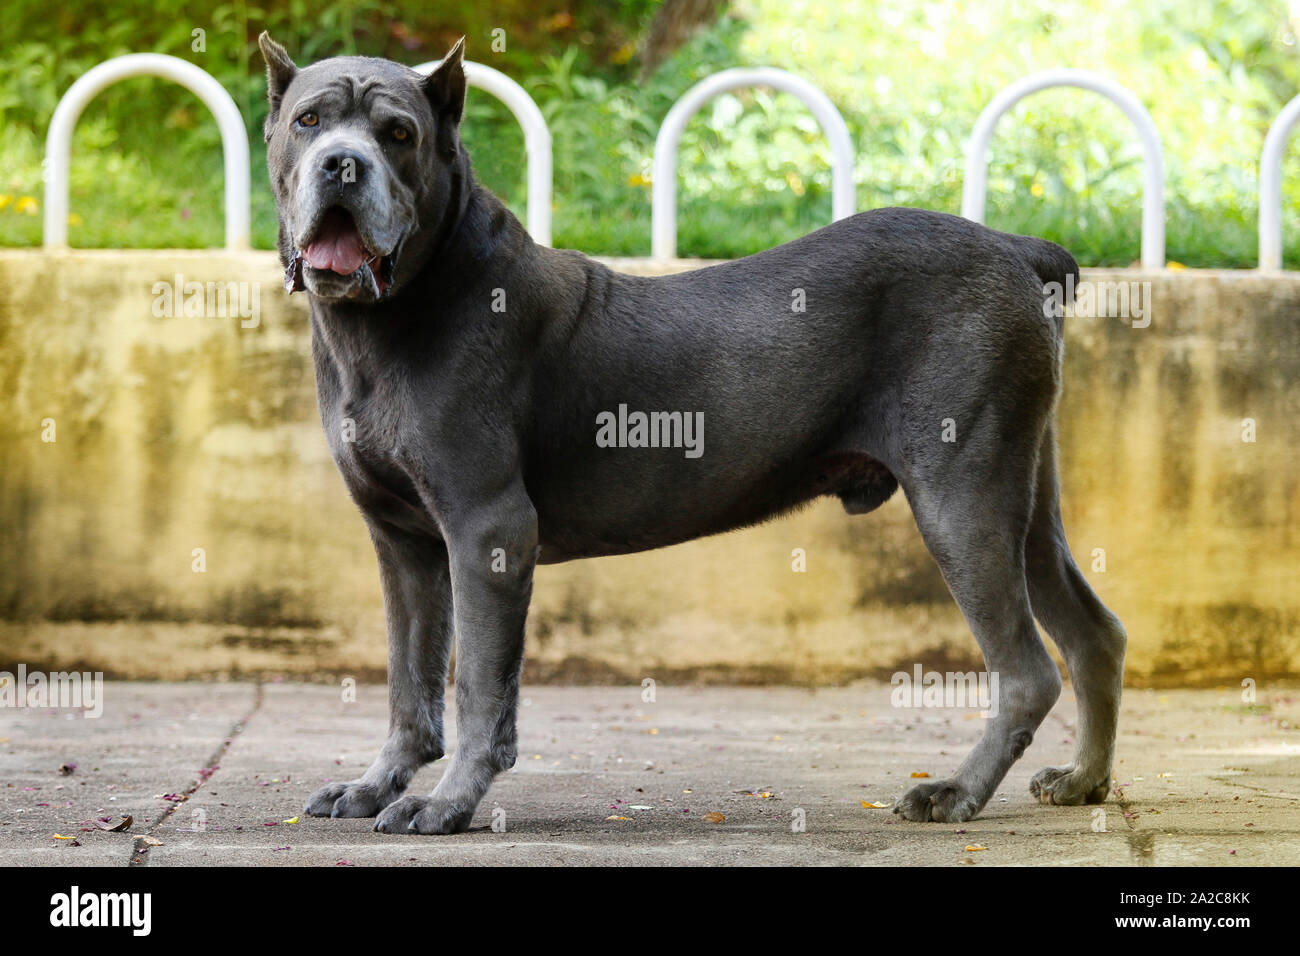 Perro de raza Corso la caña de edad adulta en pose arrogante Foto de stock